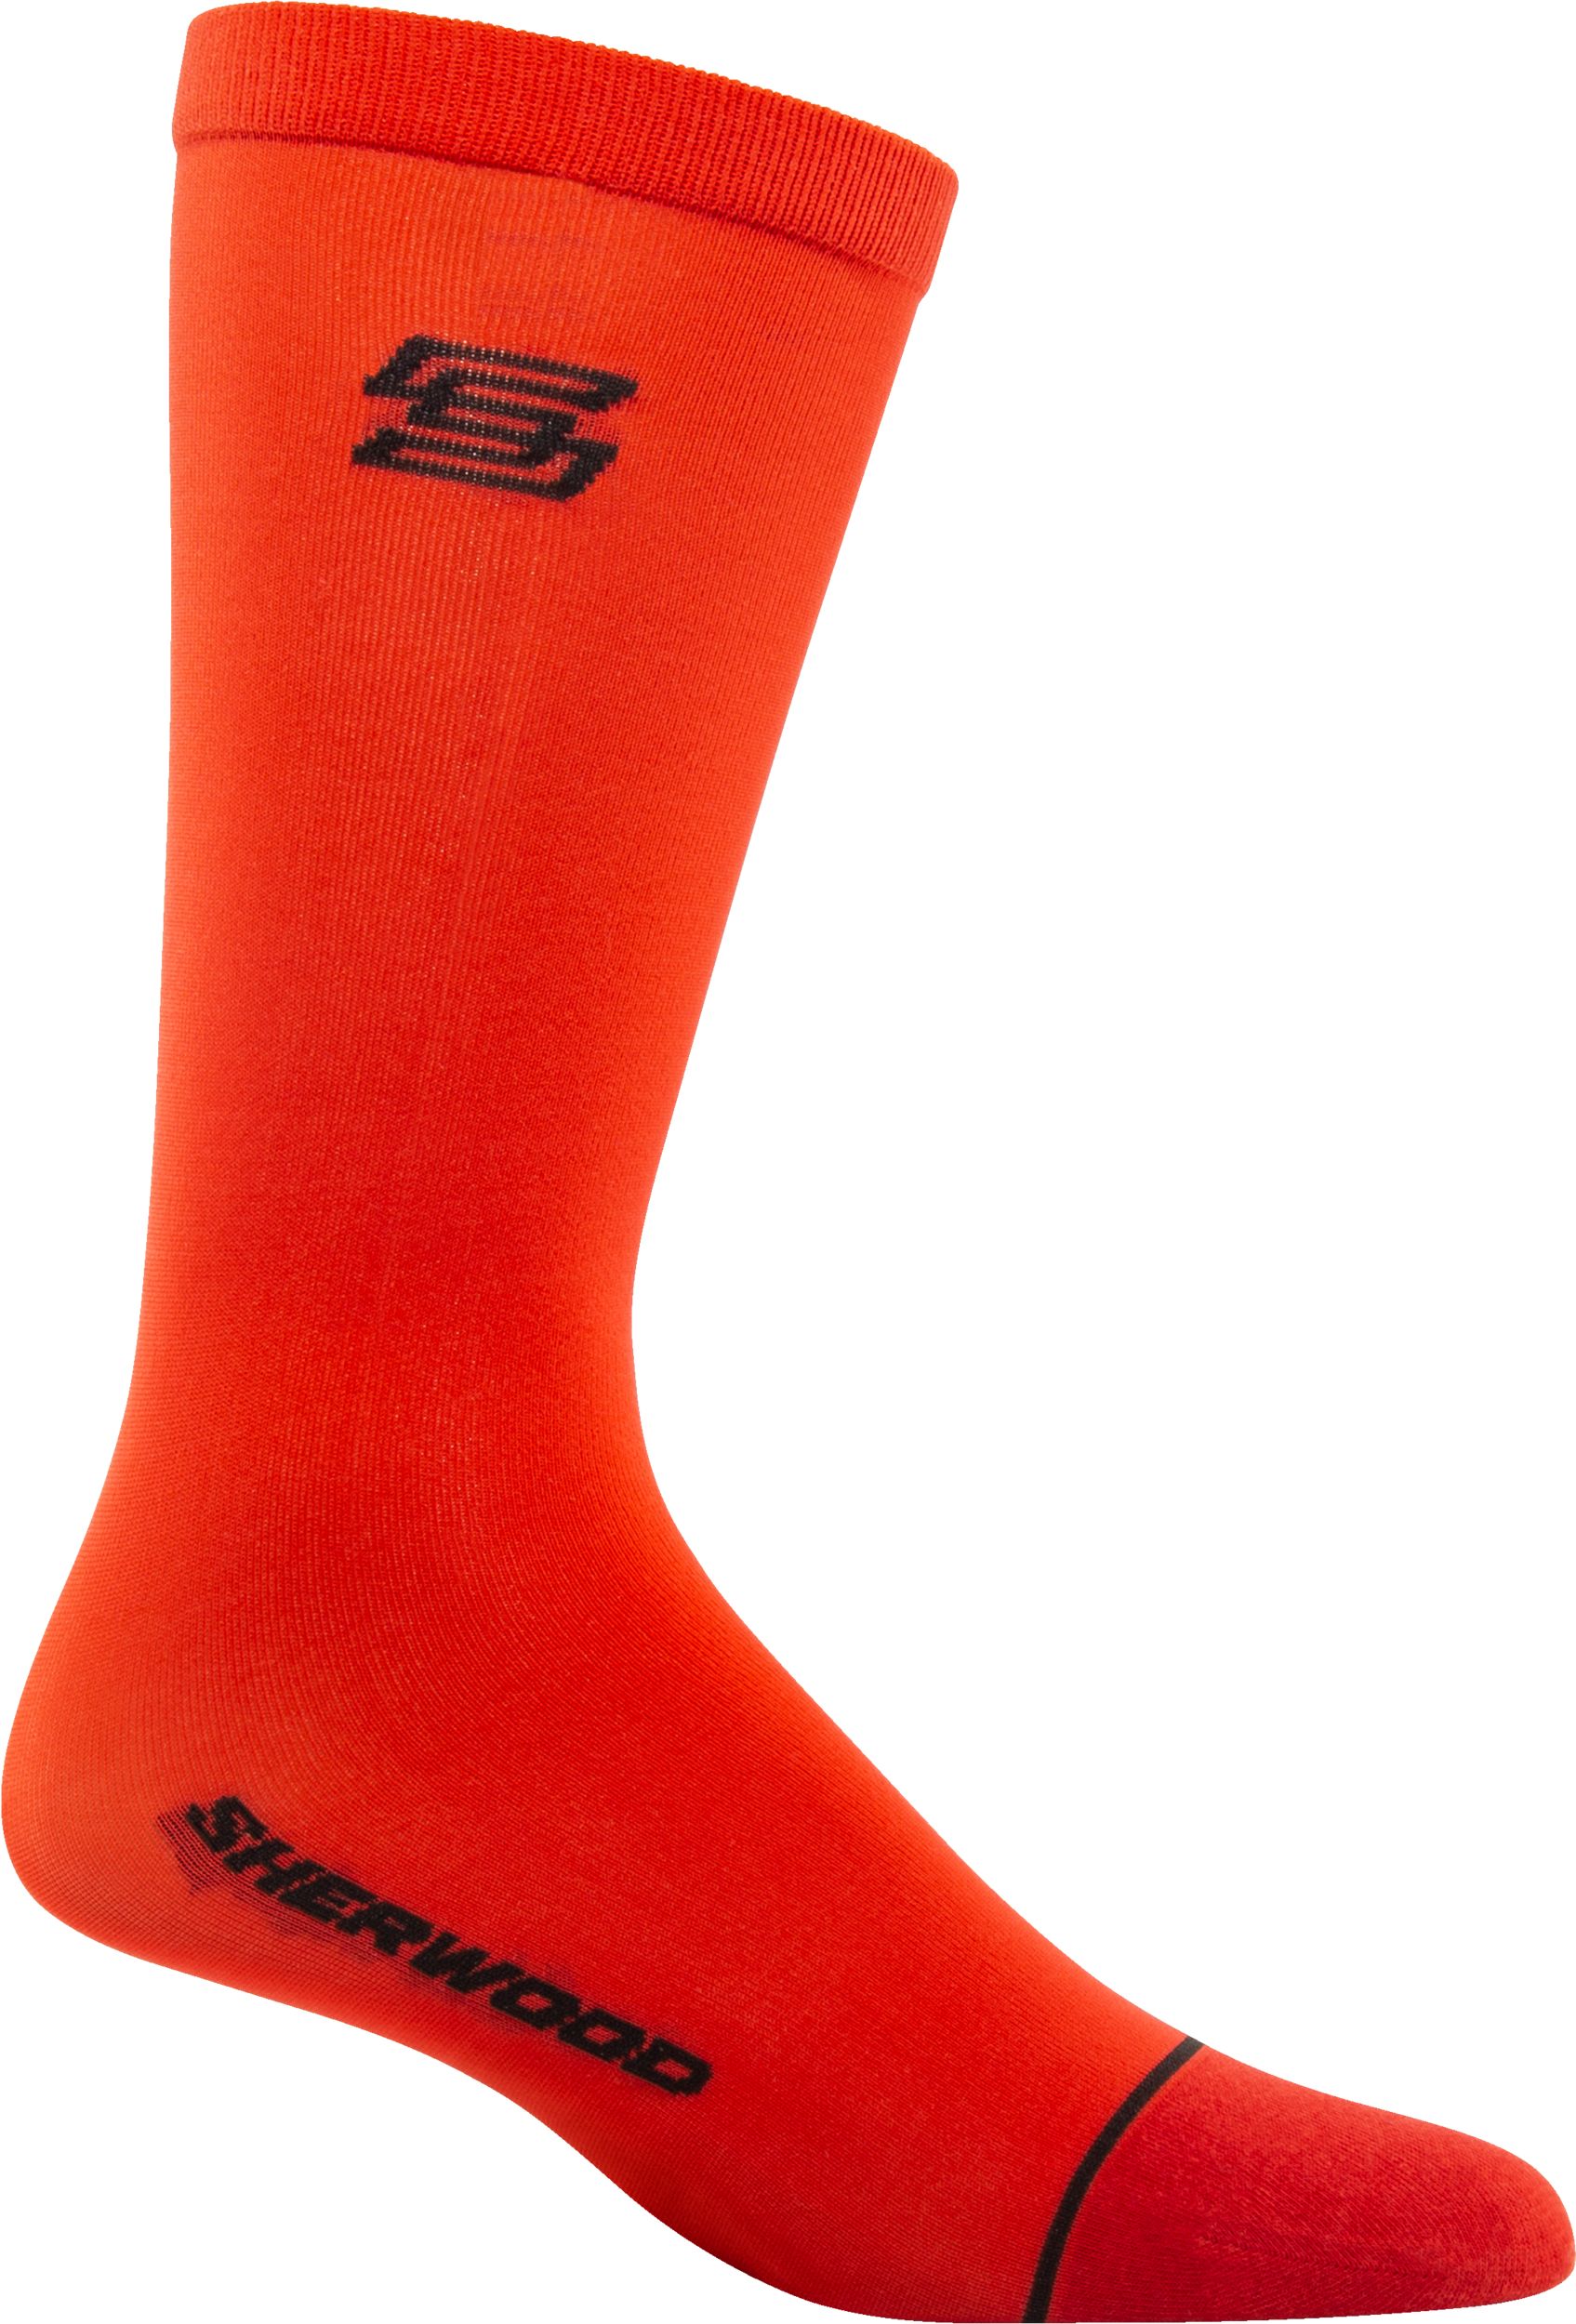 Multi Color Basic 2In1 Liner Socks - Men Socks PH05LGRL22IYMIXSTD